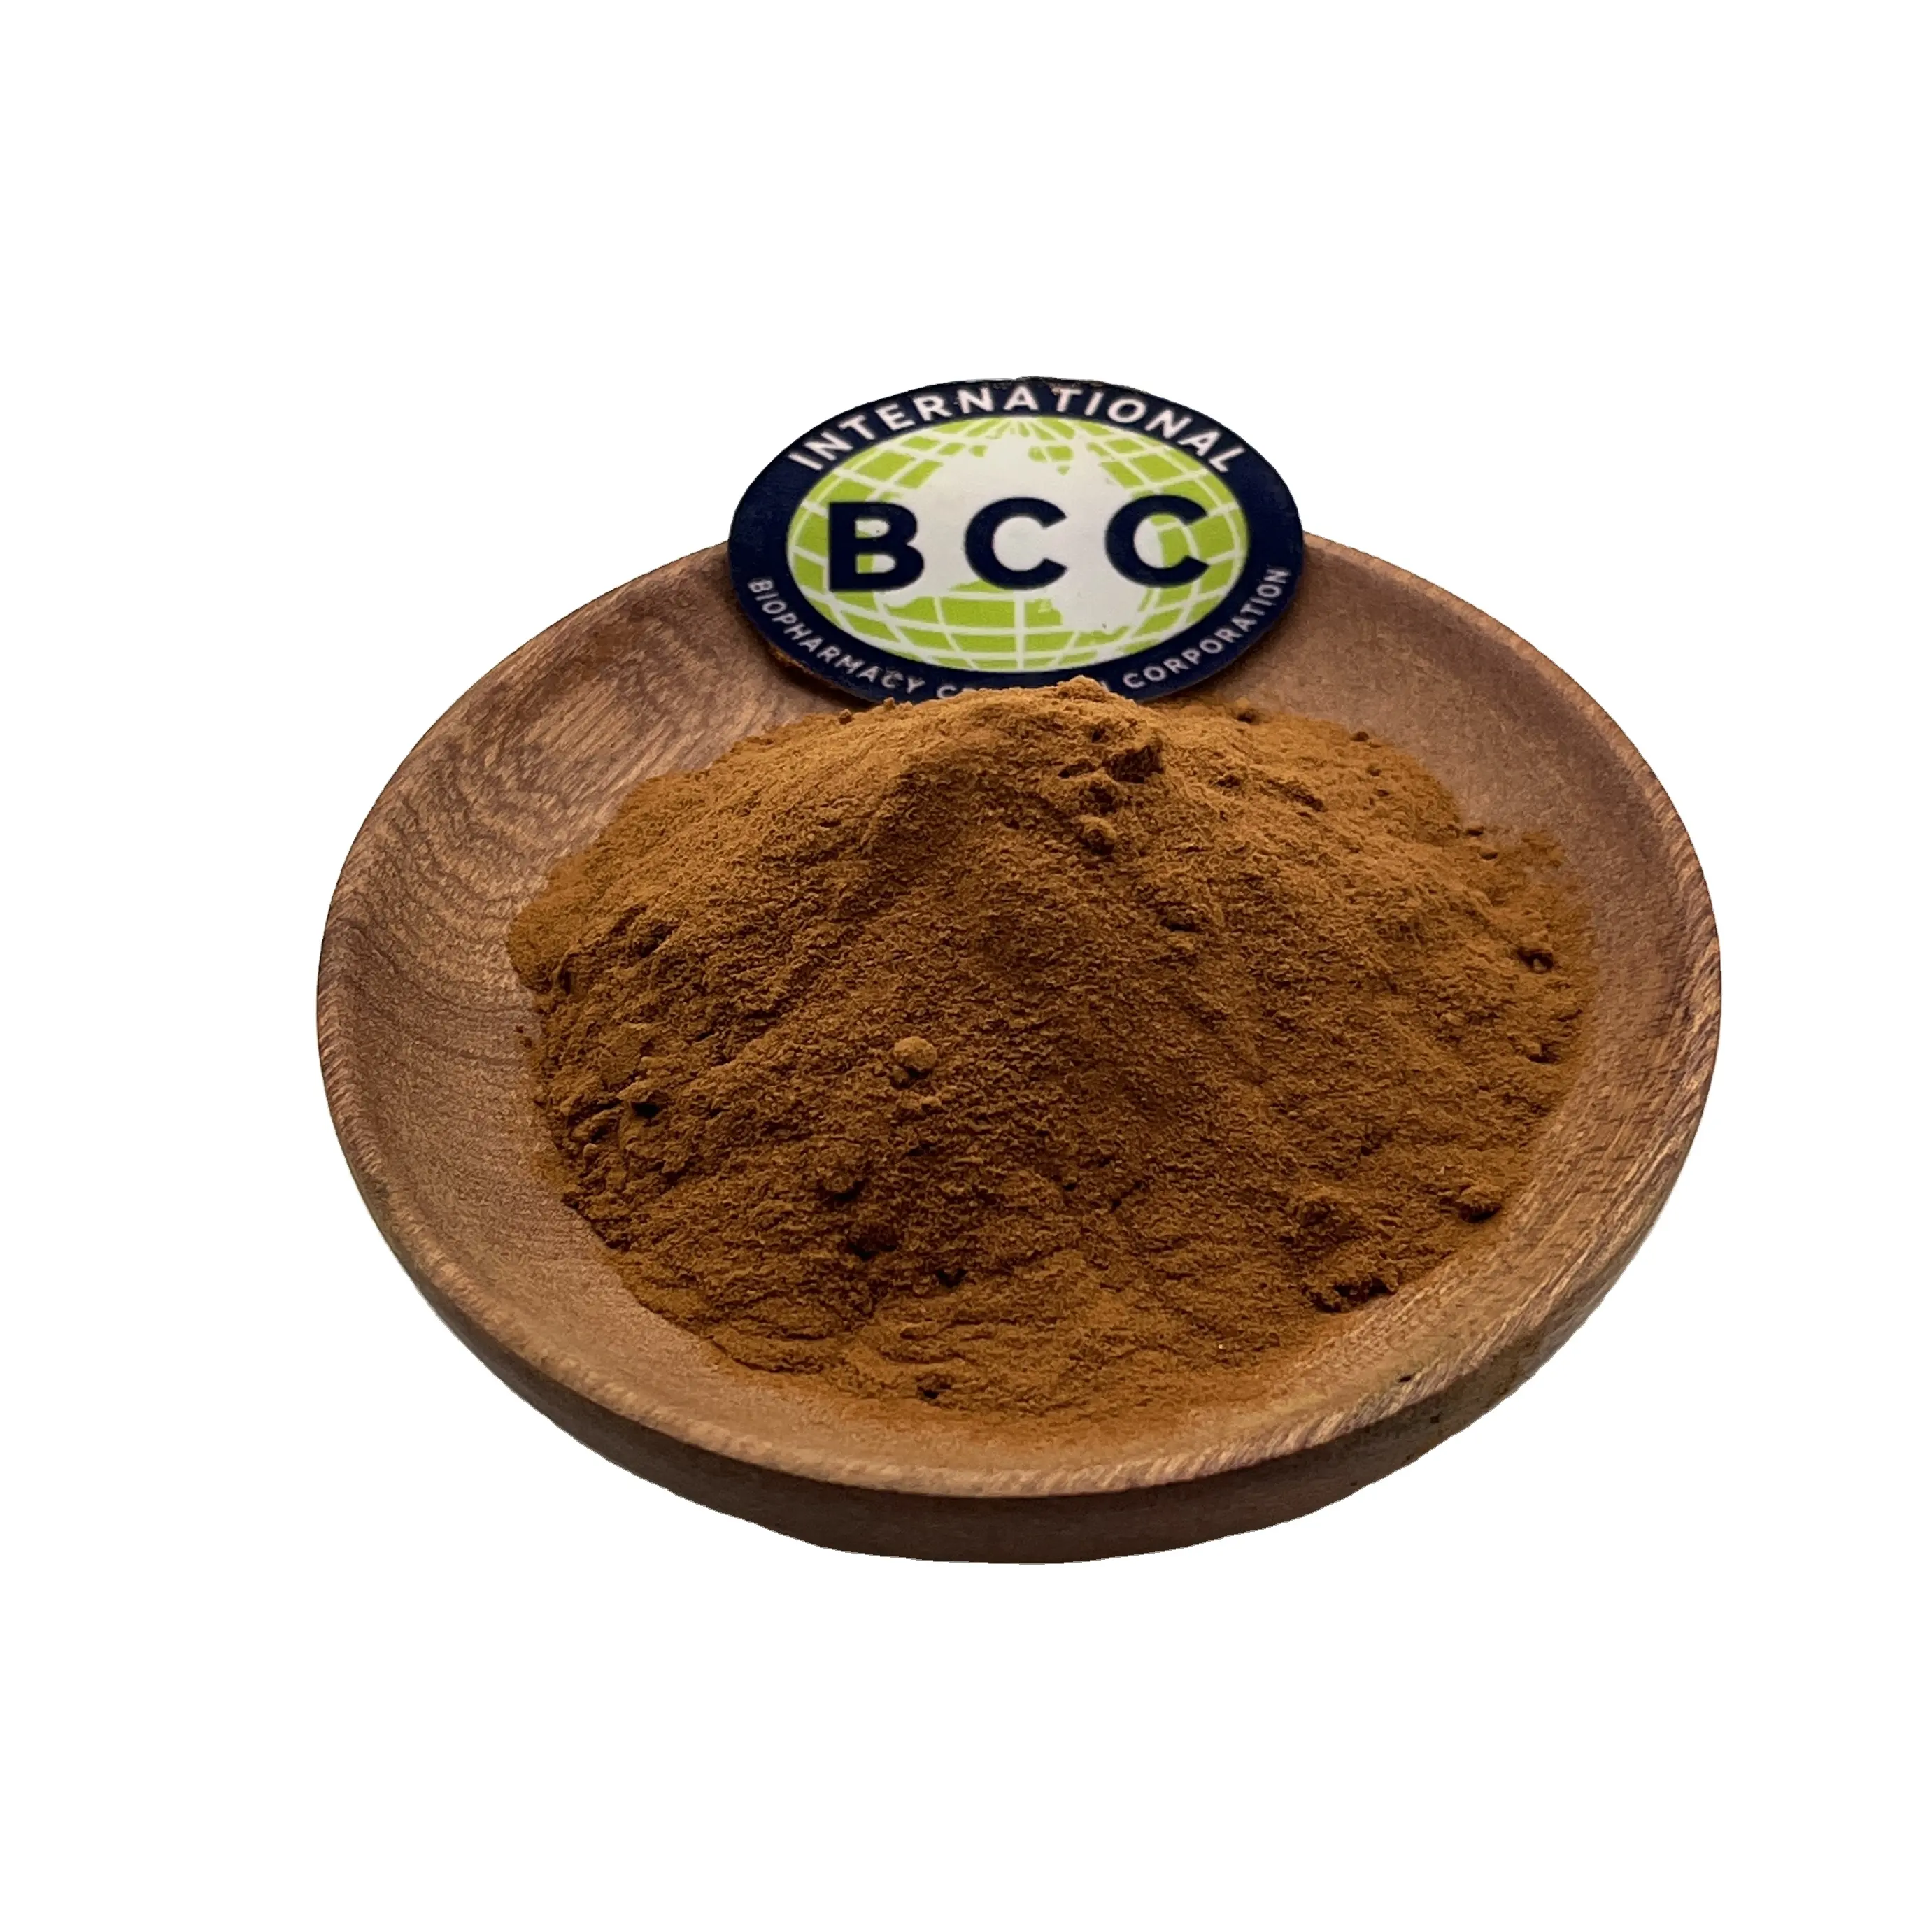 Beton Supply Wholesale Pure Powder Echinacea Polyphenols 4% Echinacea Extract